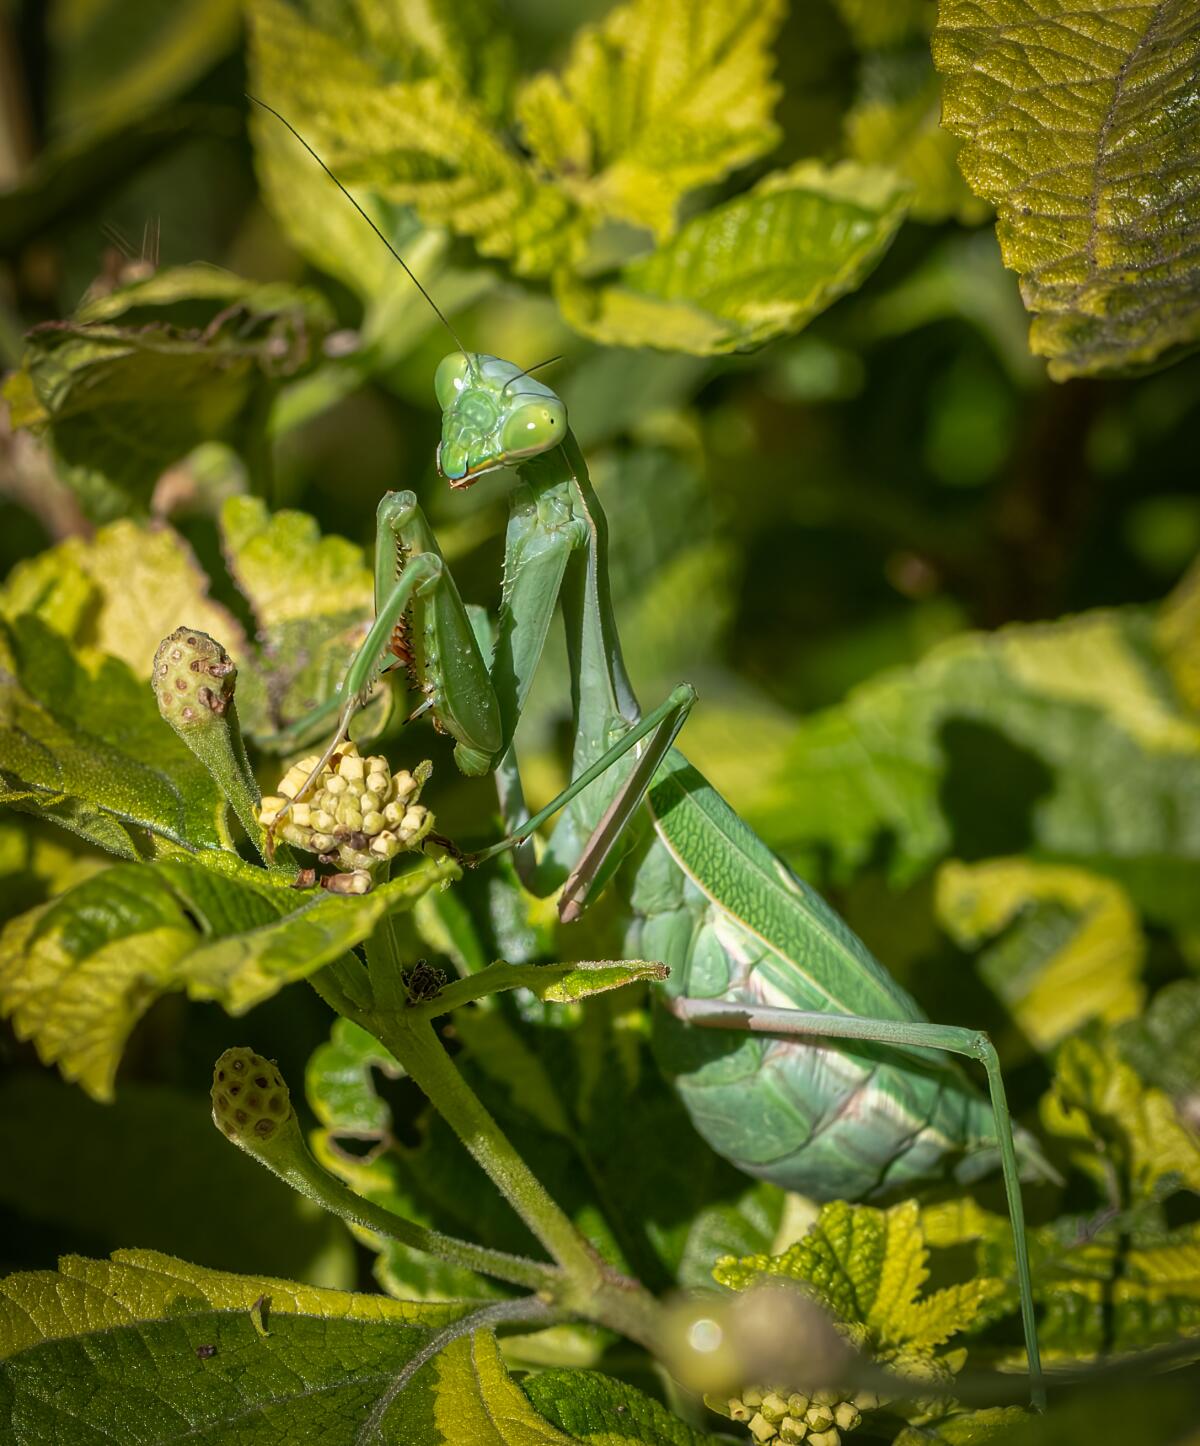 A praying mantis.